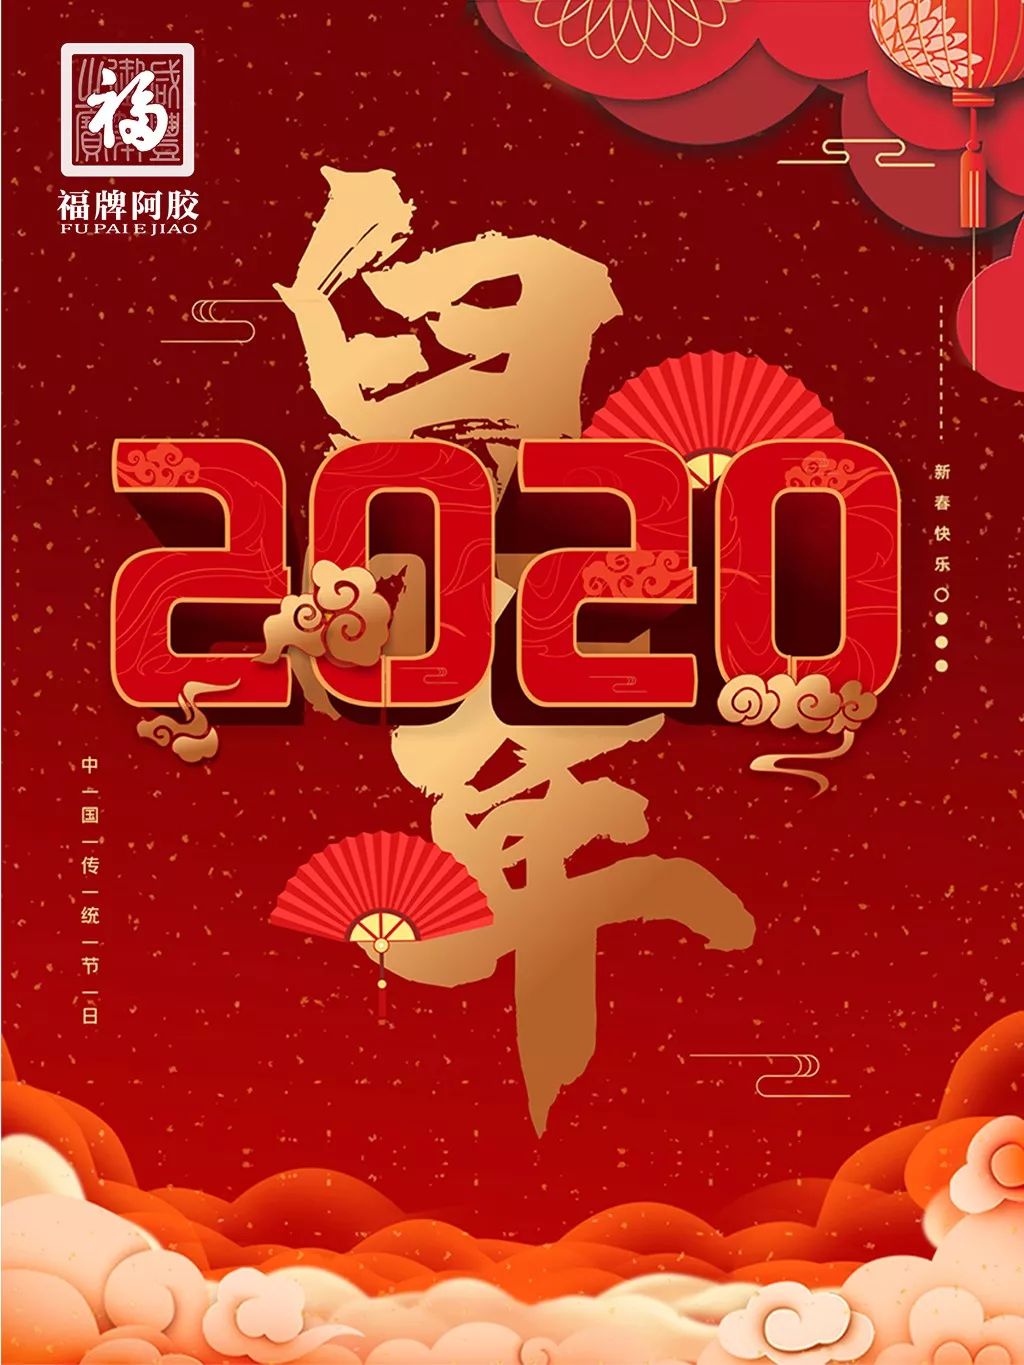 山东福胶集团董事长杨福安先生2020年新年祝福